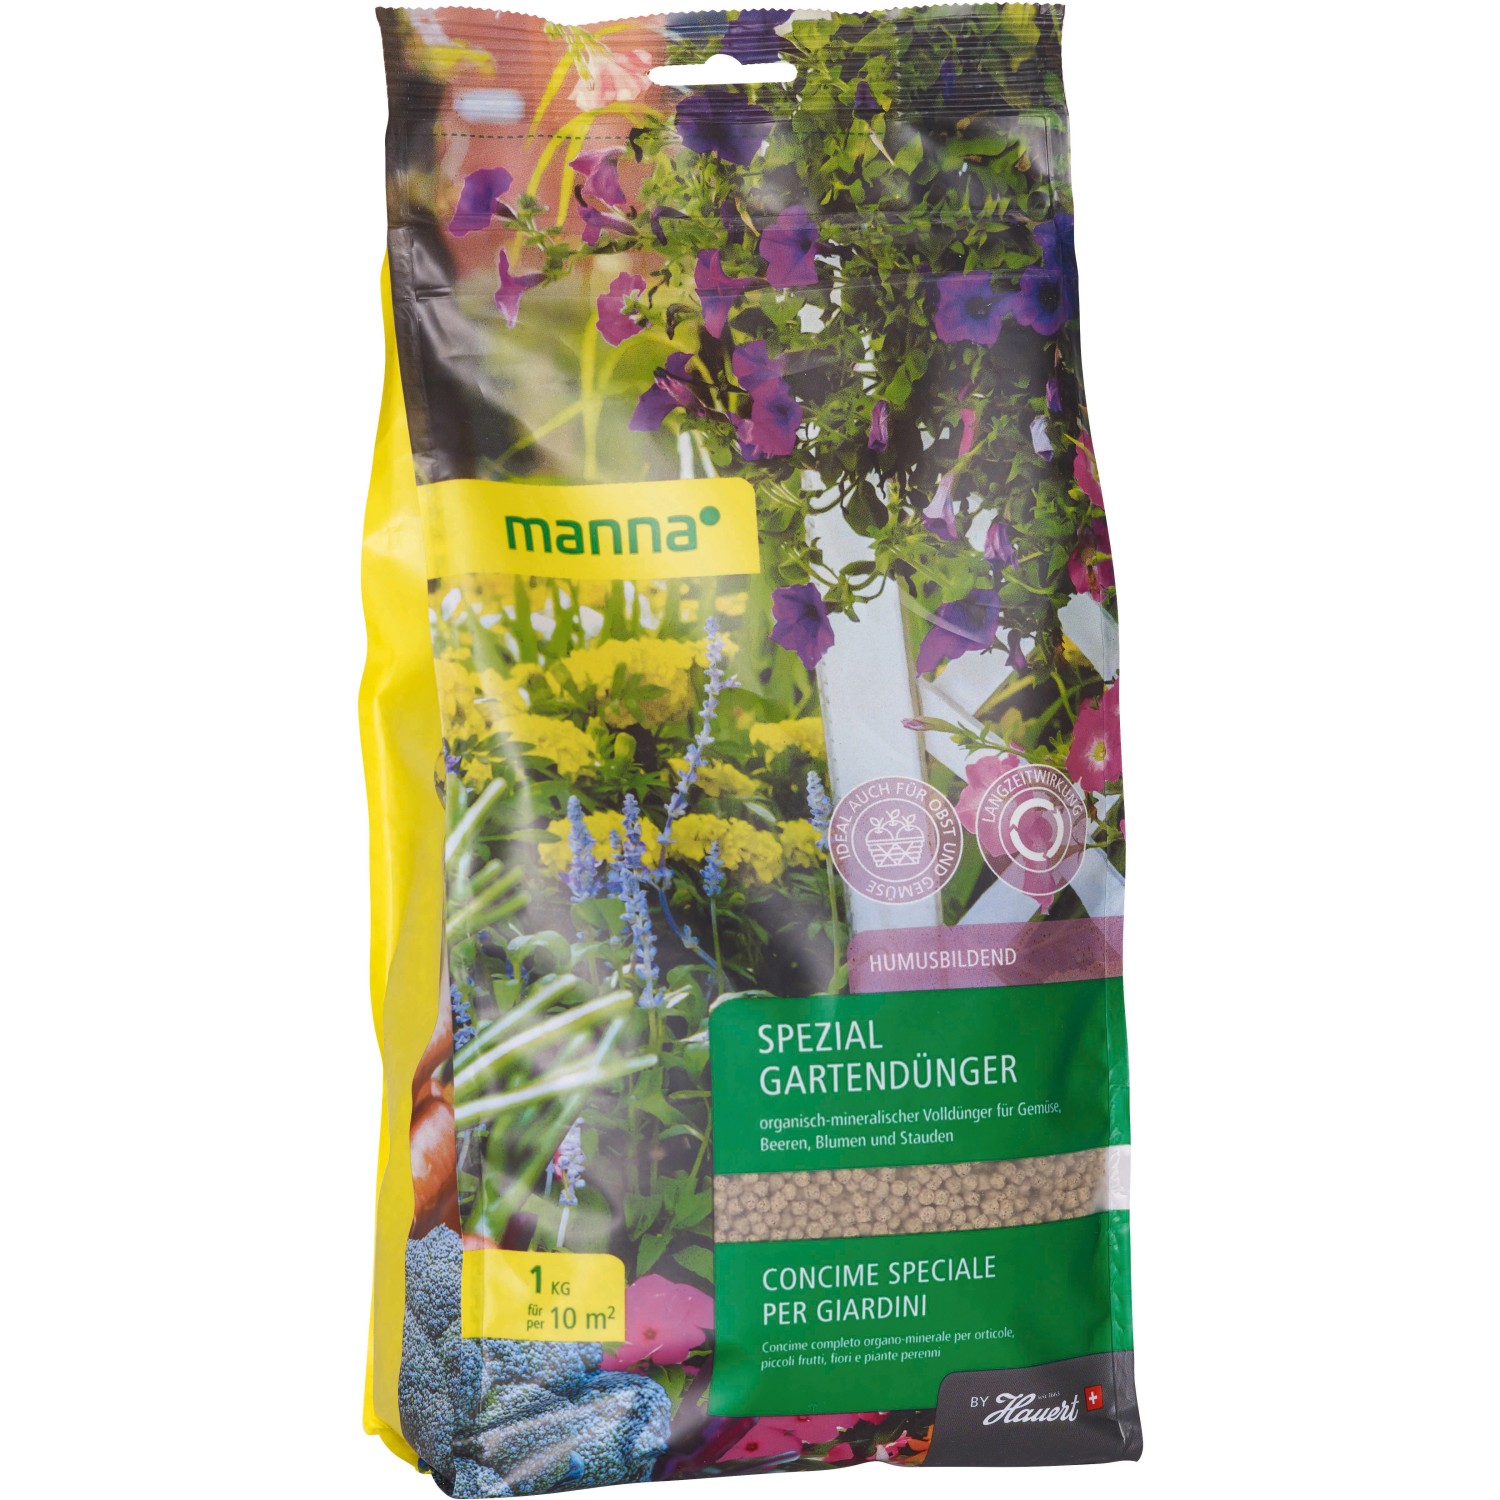 Manna Spezial Gartendünger 1 kg von Manna